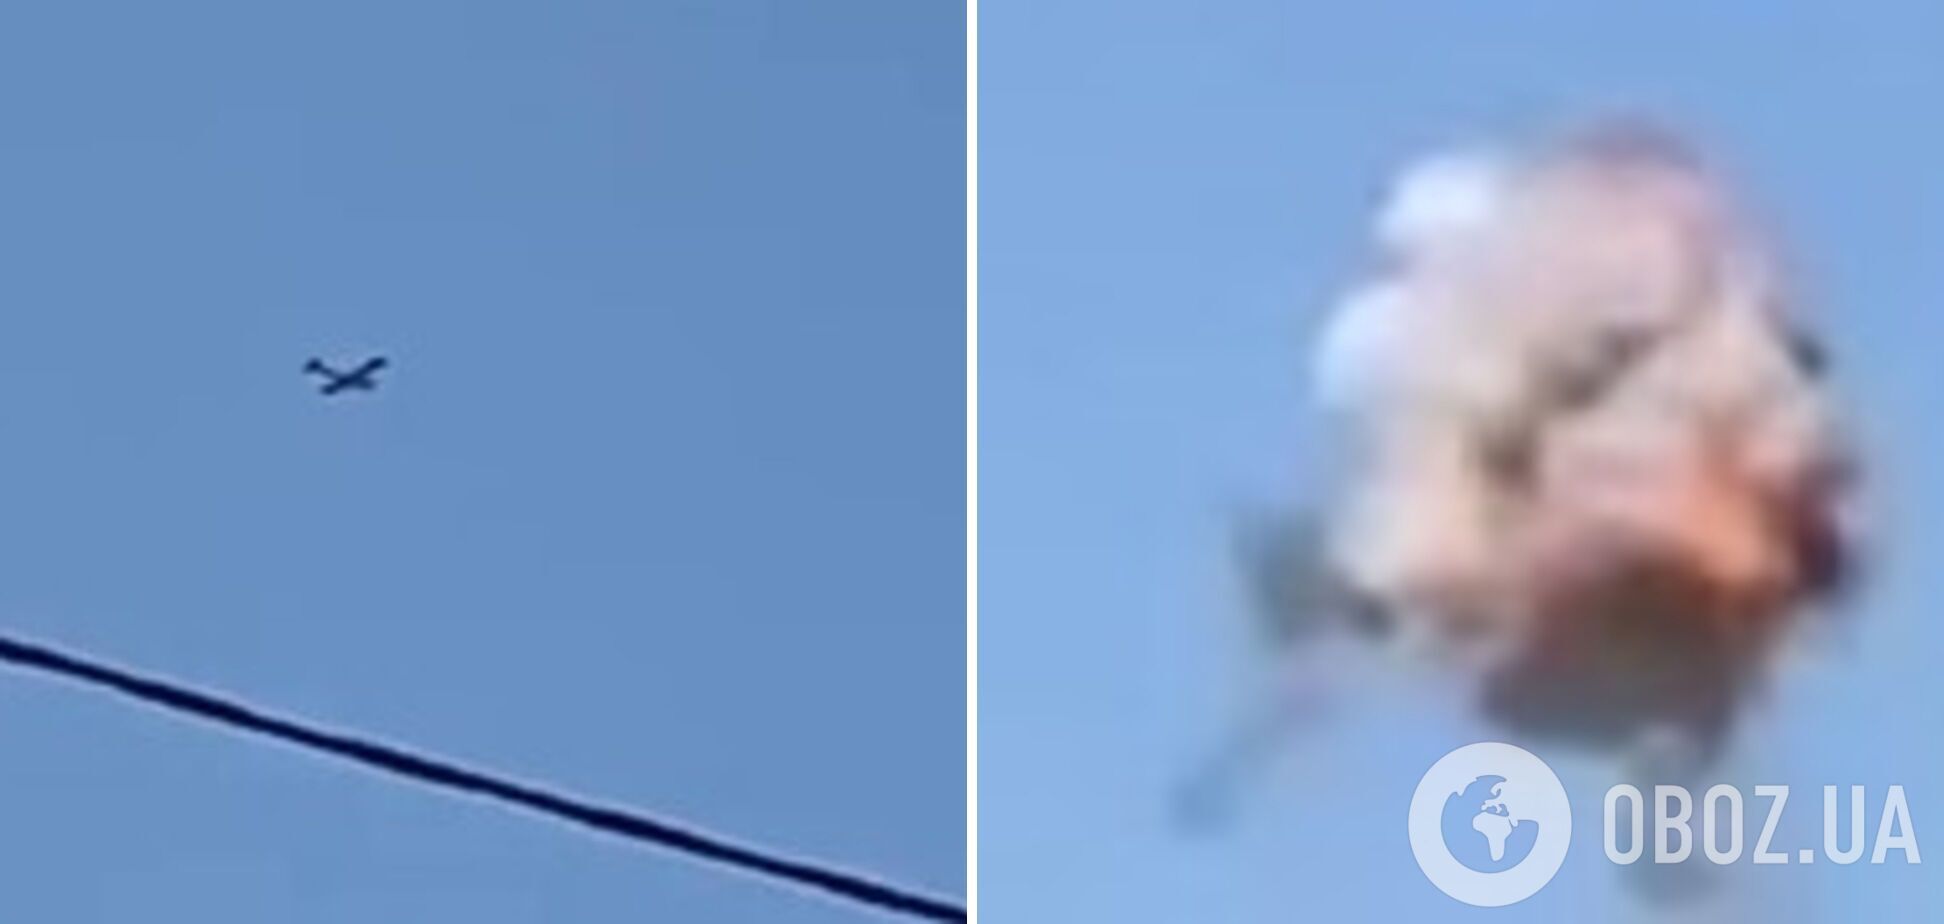 "Дуже гучно": у Брянську поскаржилися на нову атаку дронів, прогриміли вибухи. Відео